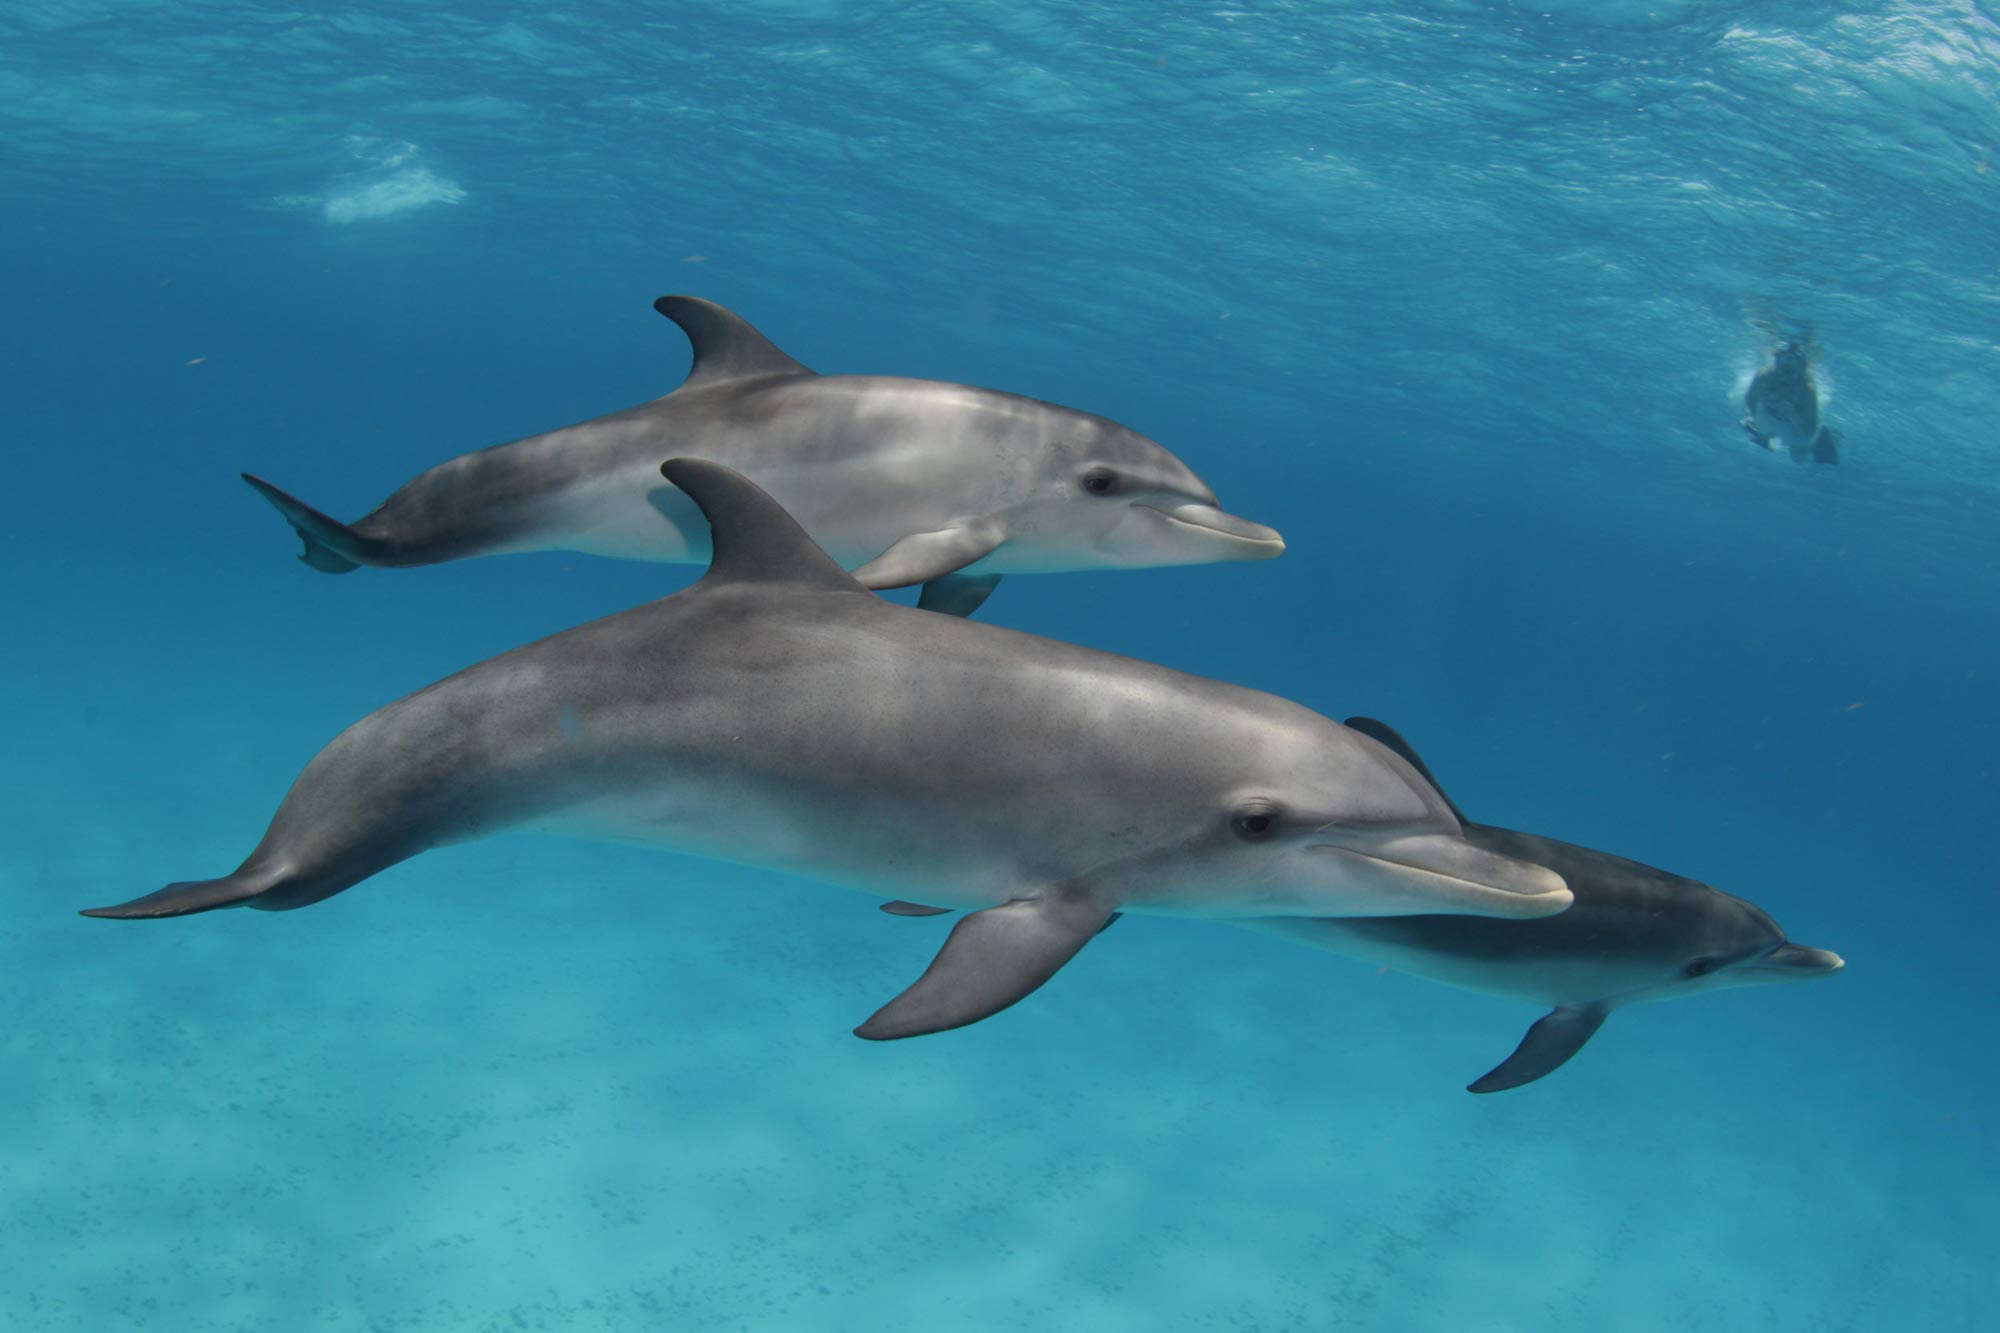 Vida Aquatica  - Dolphin Dream